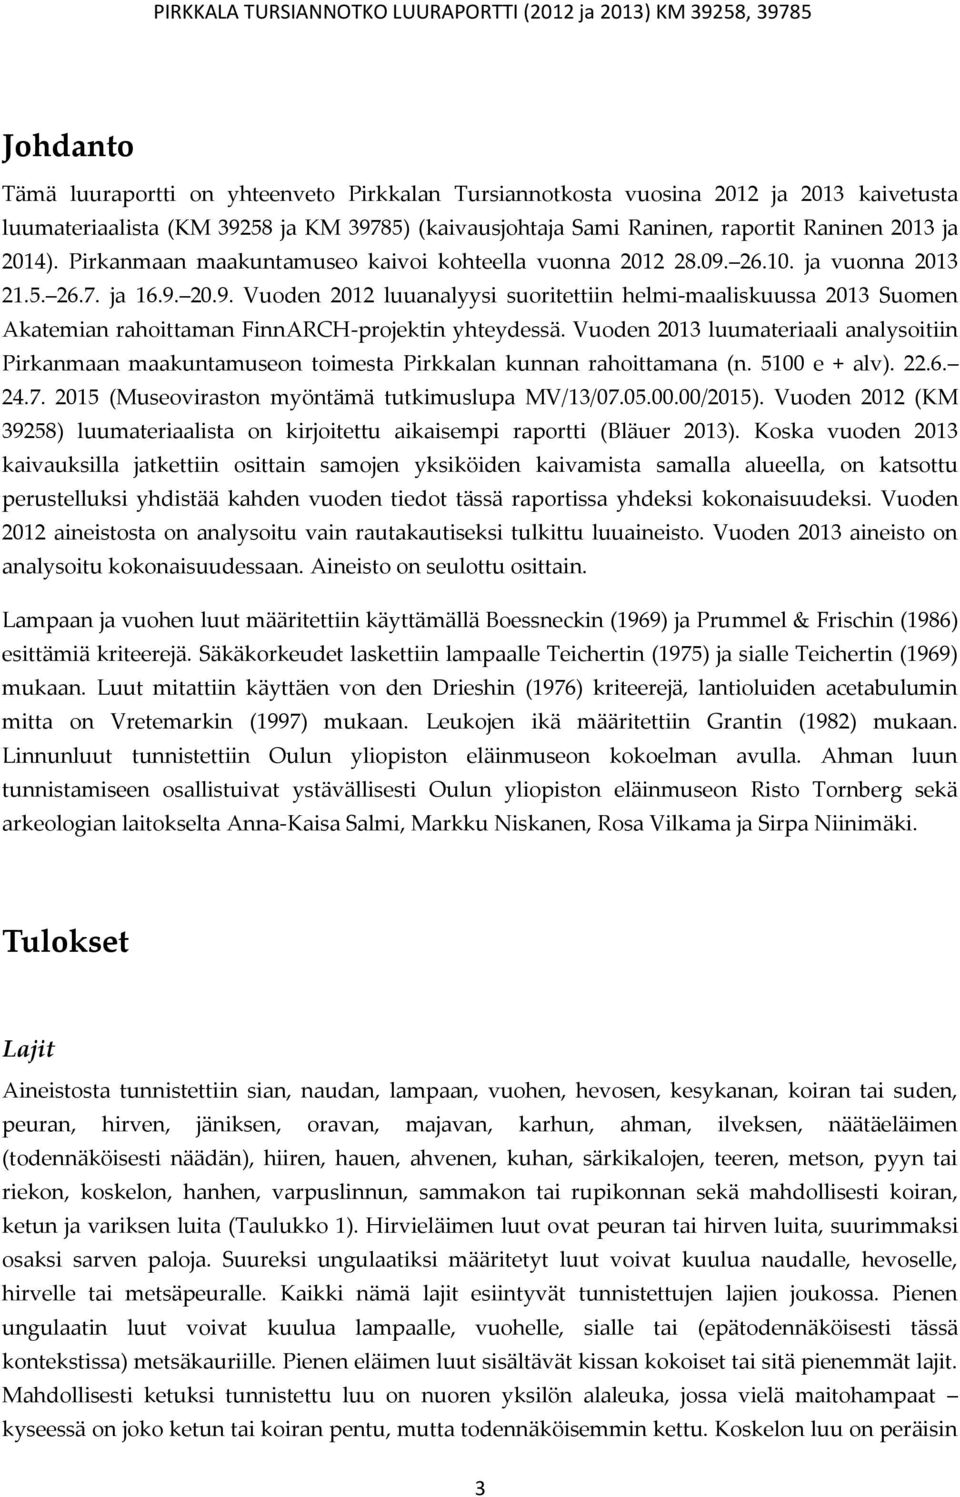 Vuoden 2013 luumateriaali analysoitiin Pirkanmaan maakuntamuseon toimesta Pirkkalan kunnan rahoittamana (n. 5100 e + alv). 22.6. 24.7. 2015 (Museoviraston myöntämä tutkimuslupa MV/13/07.05.00.00/2015).